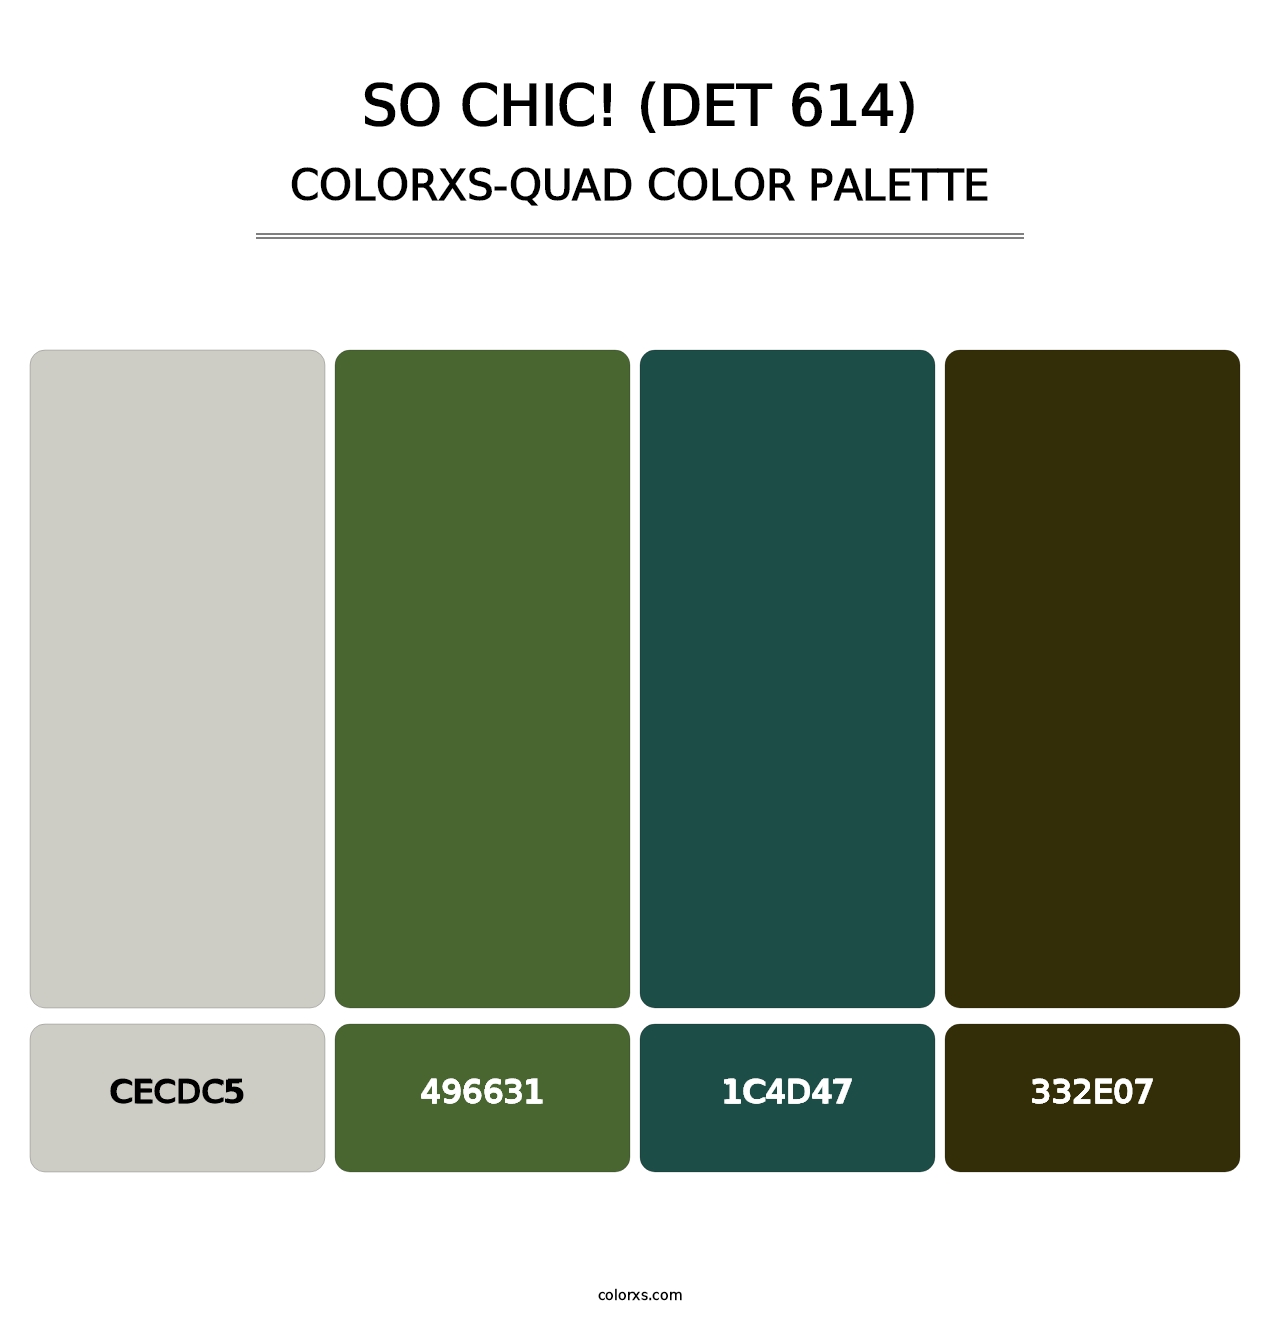 So Chic! (DET 614) - Colorxs Quad Palette